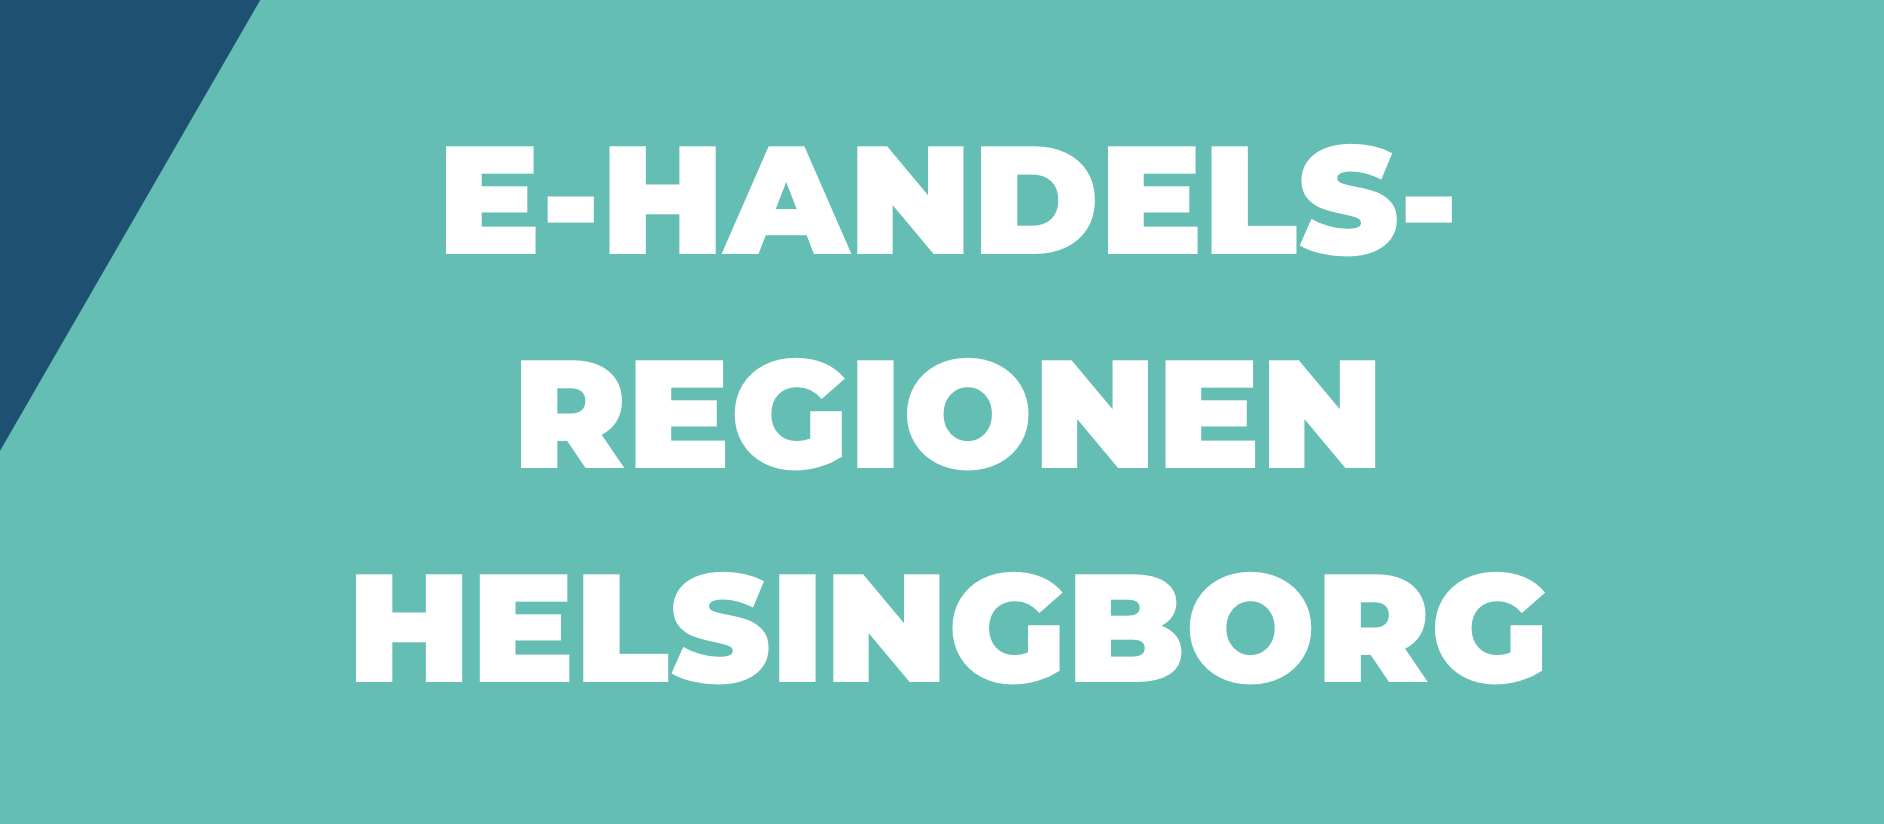 Rapport: Helsingborg som e-handelsstad